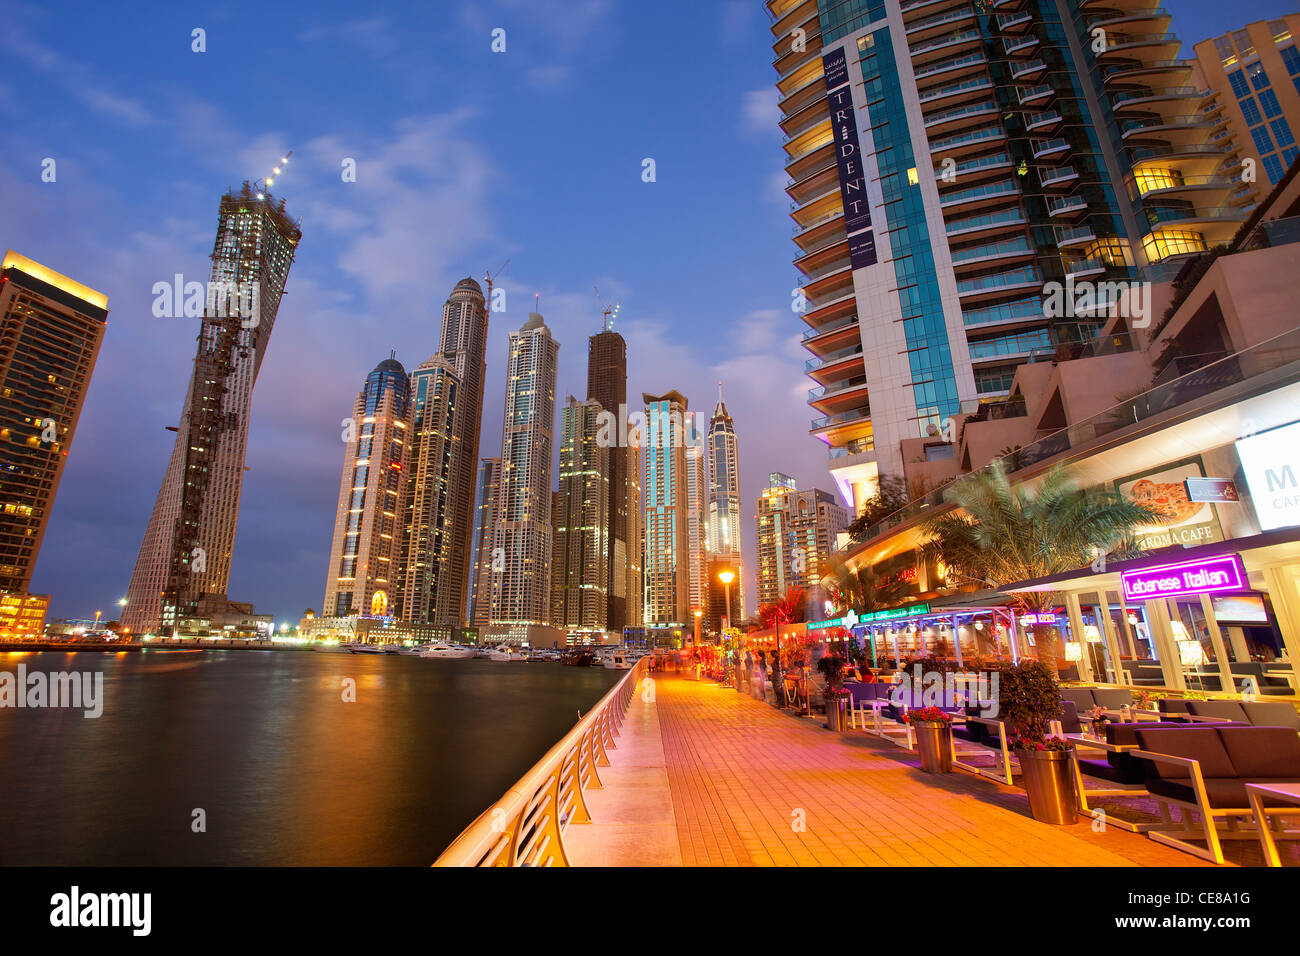 Asia, Arabia, Dubai Emirate, Dubai, Harbor and Skyscrapers of Dubai Marina Stock Photo